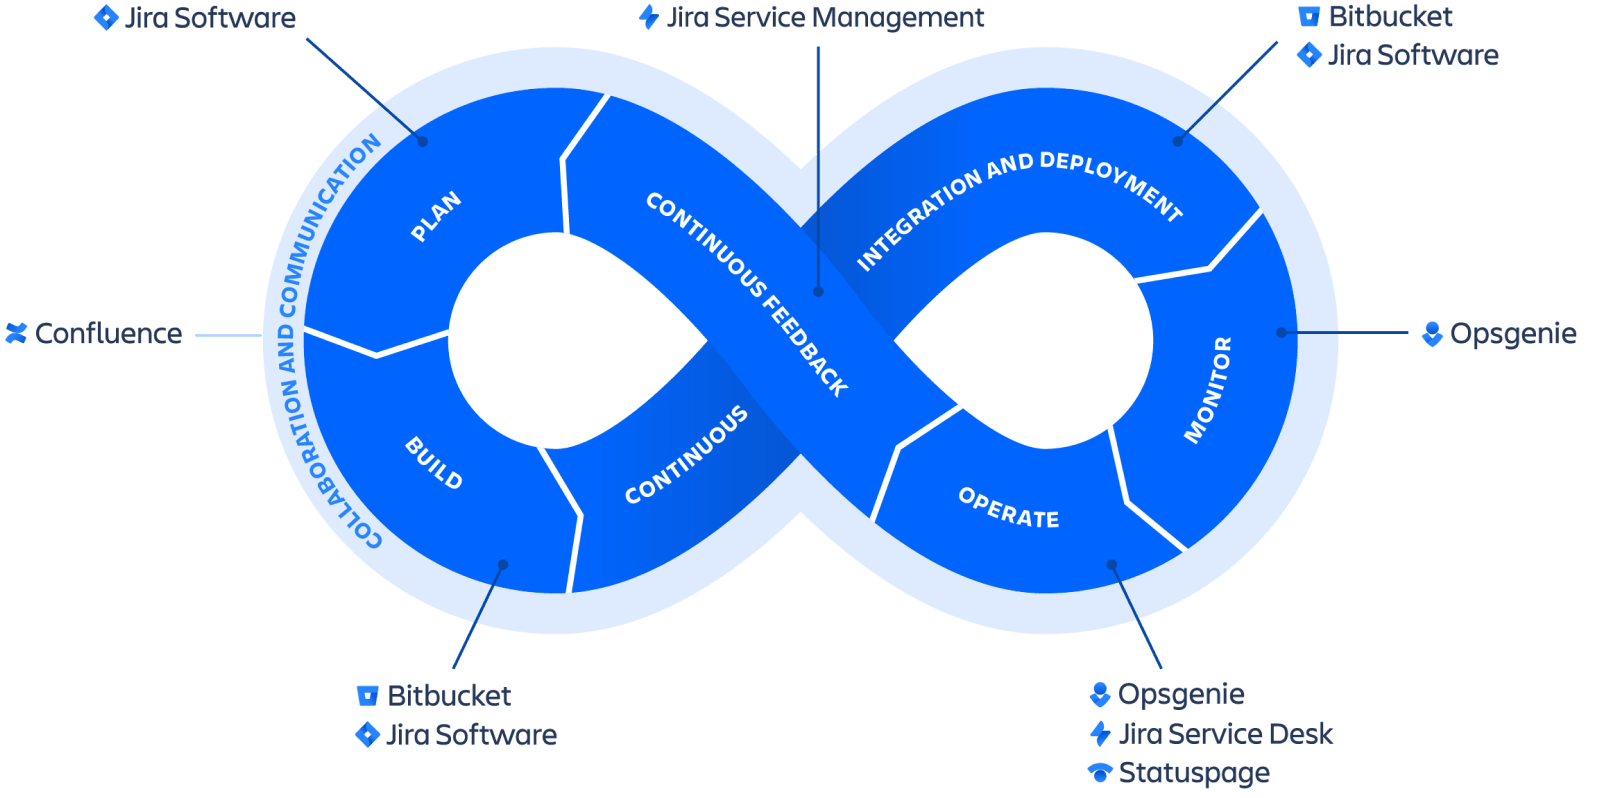 Mit Atlassian Tools wie Jira Service Management, Confluence, Bitbucket uvm. verwalten Sie Ihre IT-Services effizient.